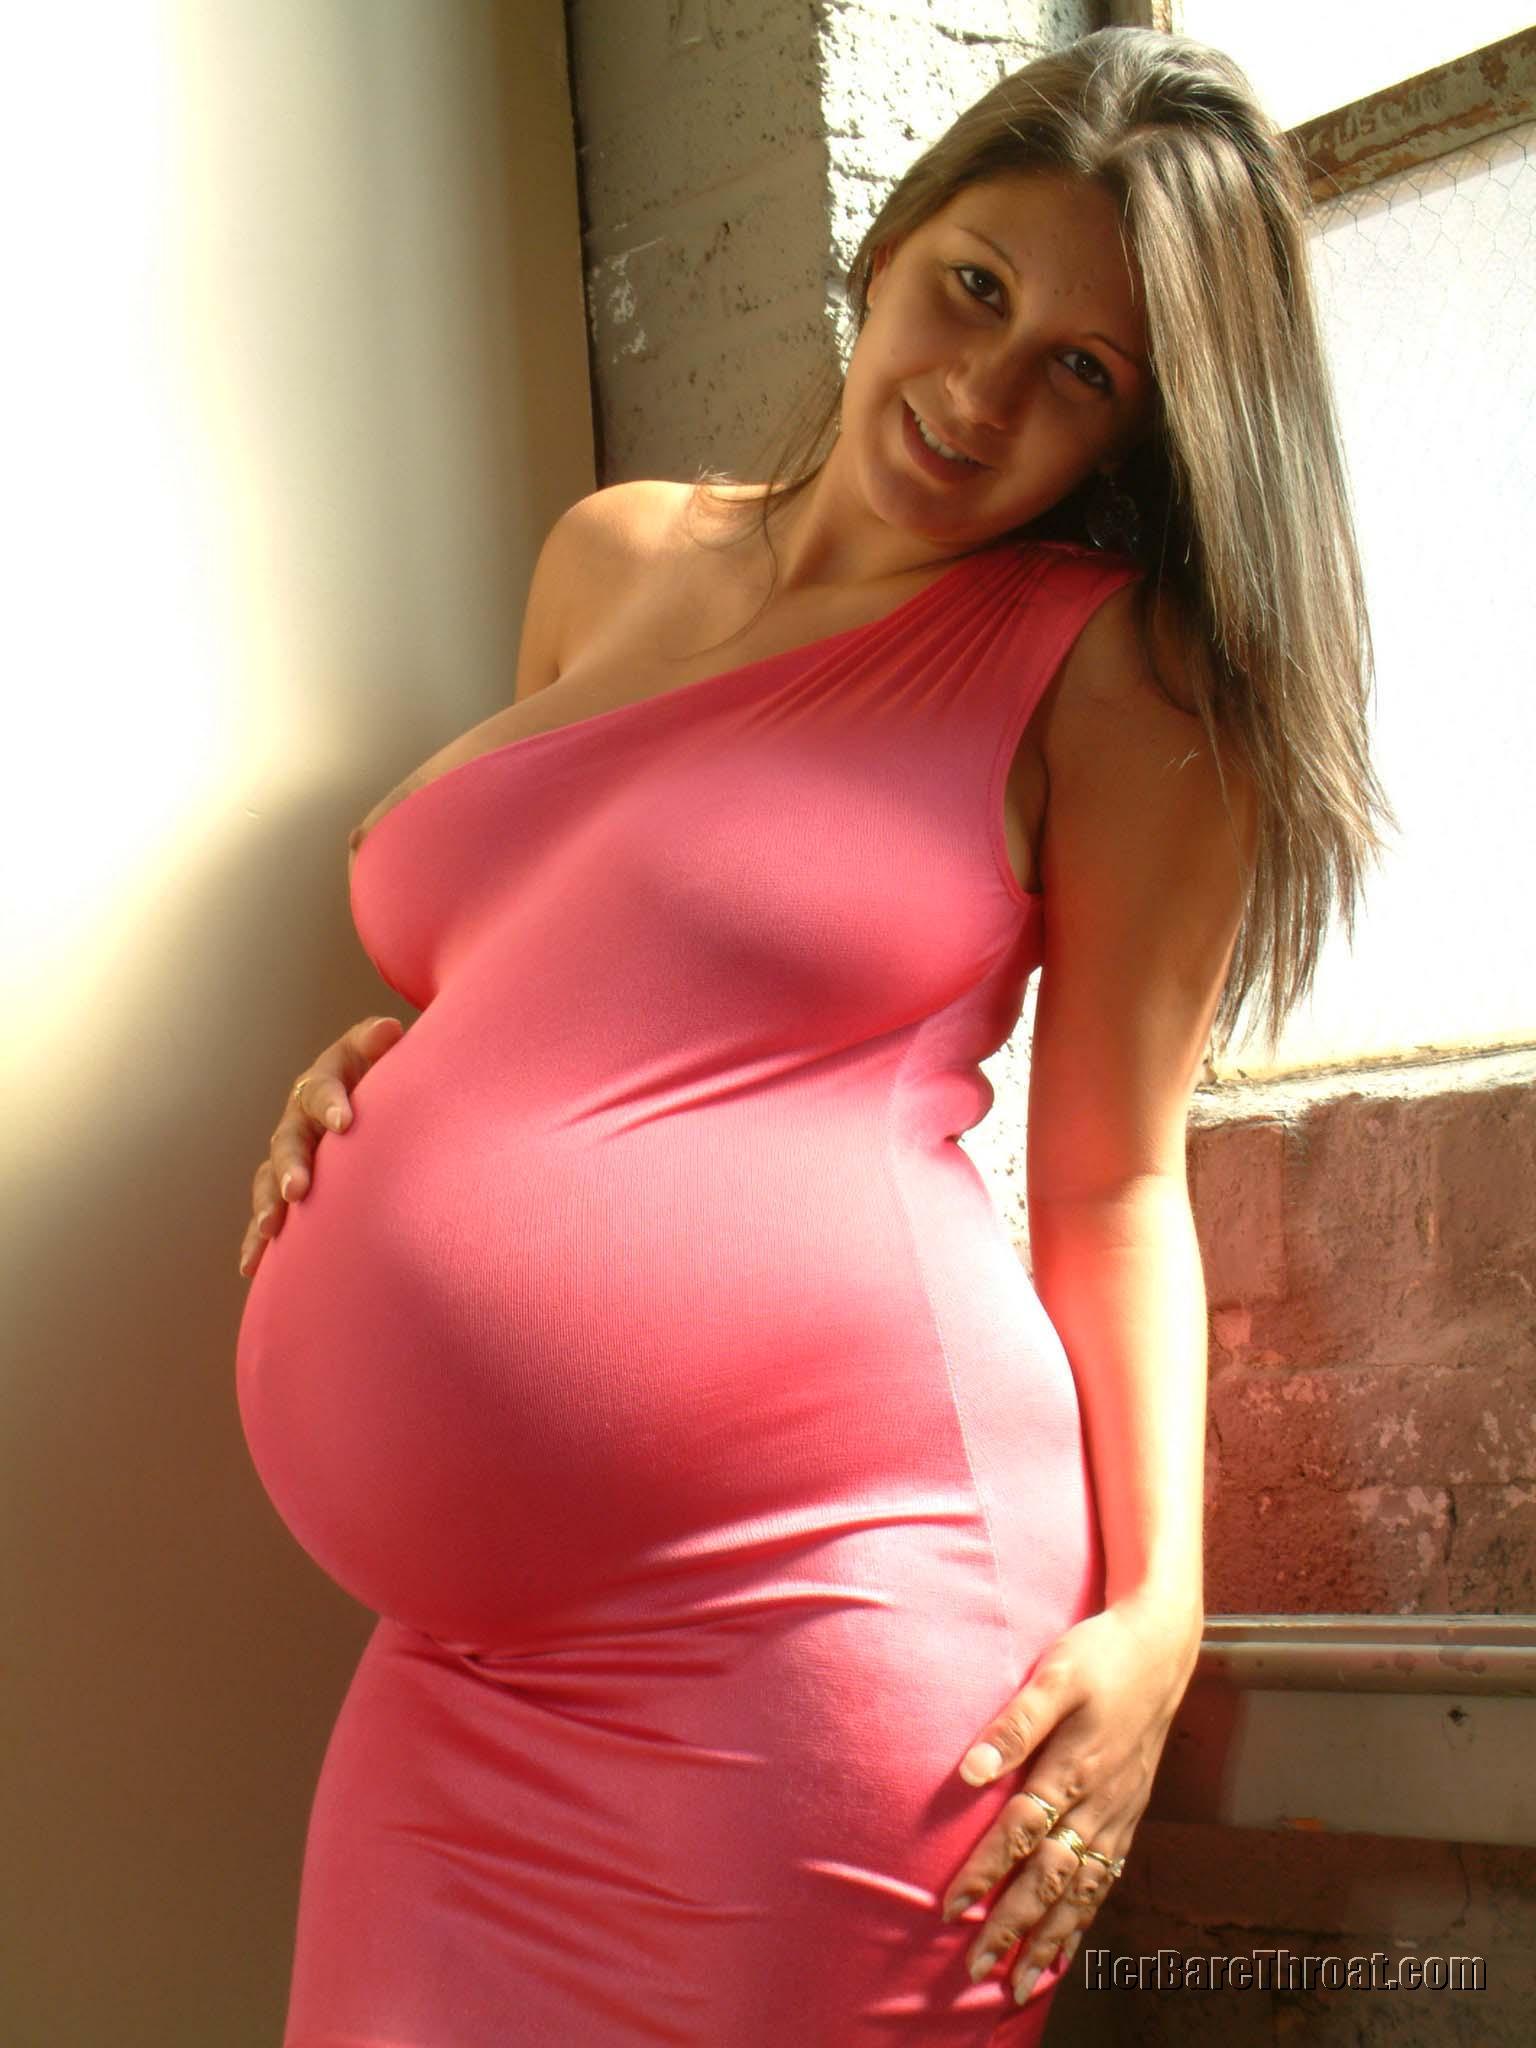 ее огромная грудь и беременный живот (120) фото